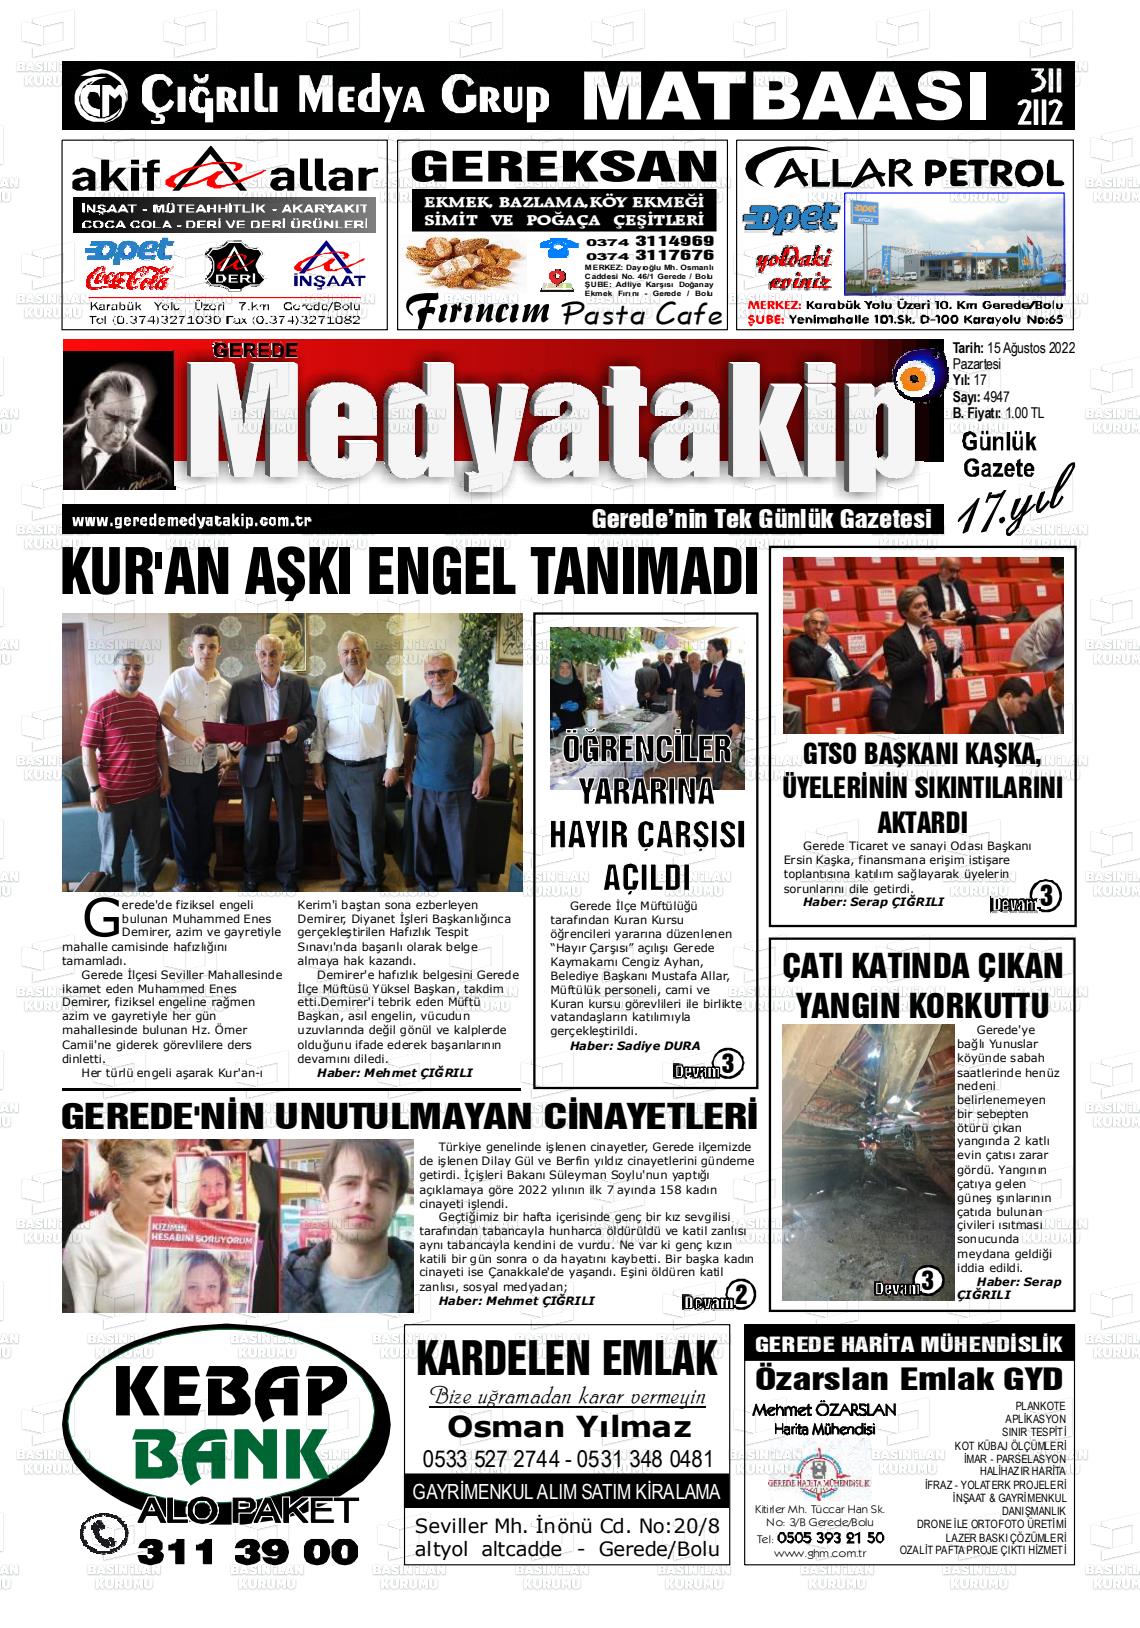 15 Ağustos 2022 Gerede Medya Takip Gazete Manşeti